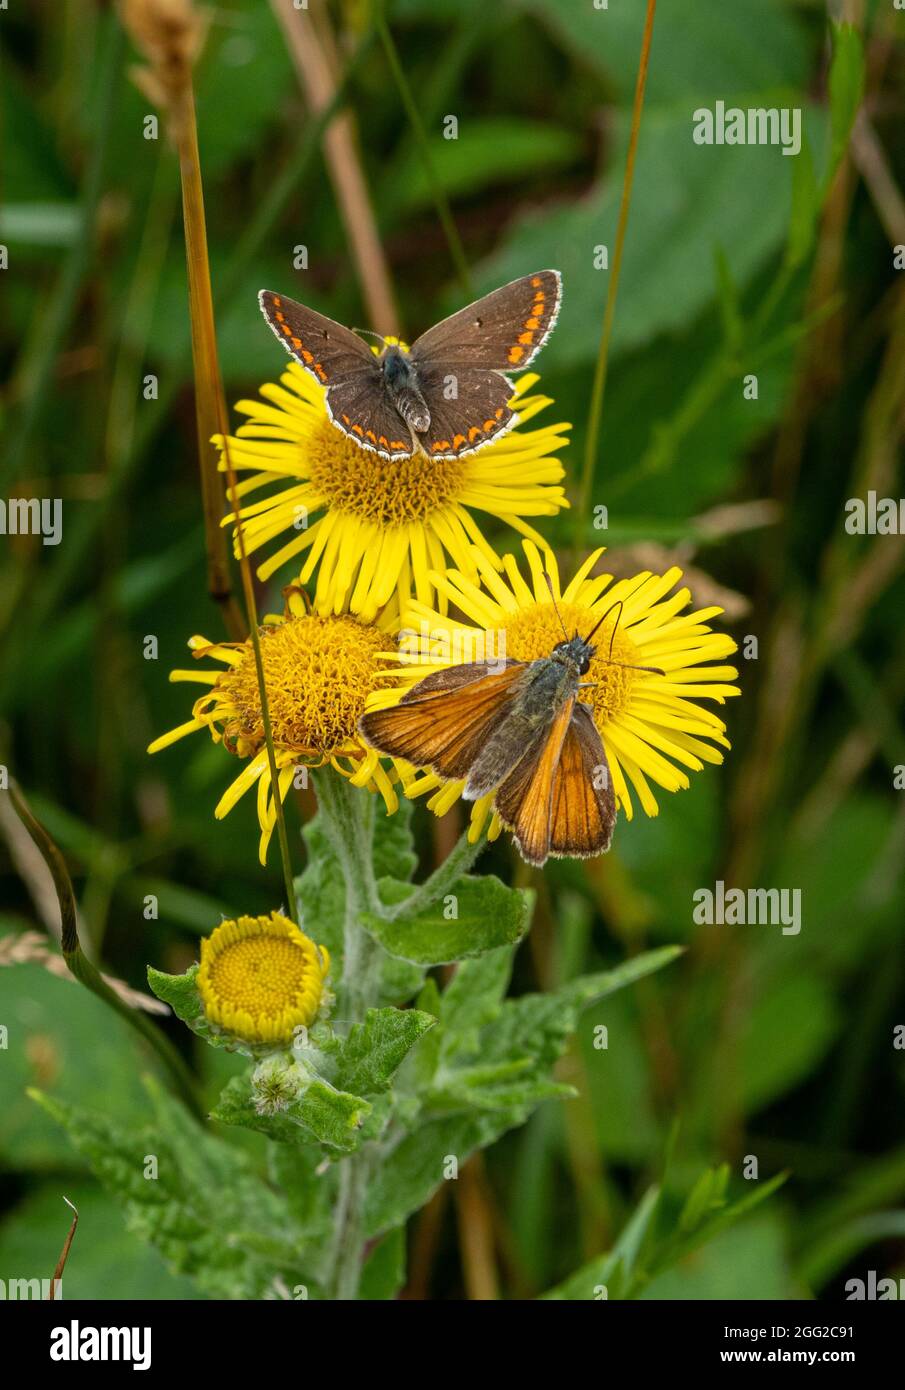 Zwei Schmetterlinge, die sich im Sommer von der gemeinsamen Ragwürzeblüten ernähren, einer guten Insektennektarquelle, Großbritannien. Brauner Argus und kleiner Skipper-Schmetterling Stockfoto